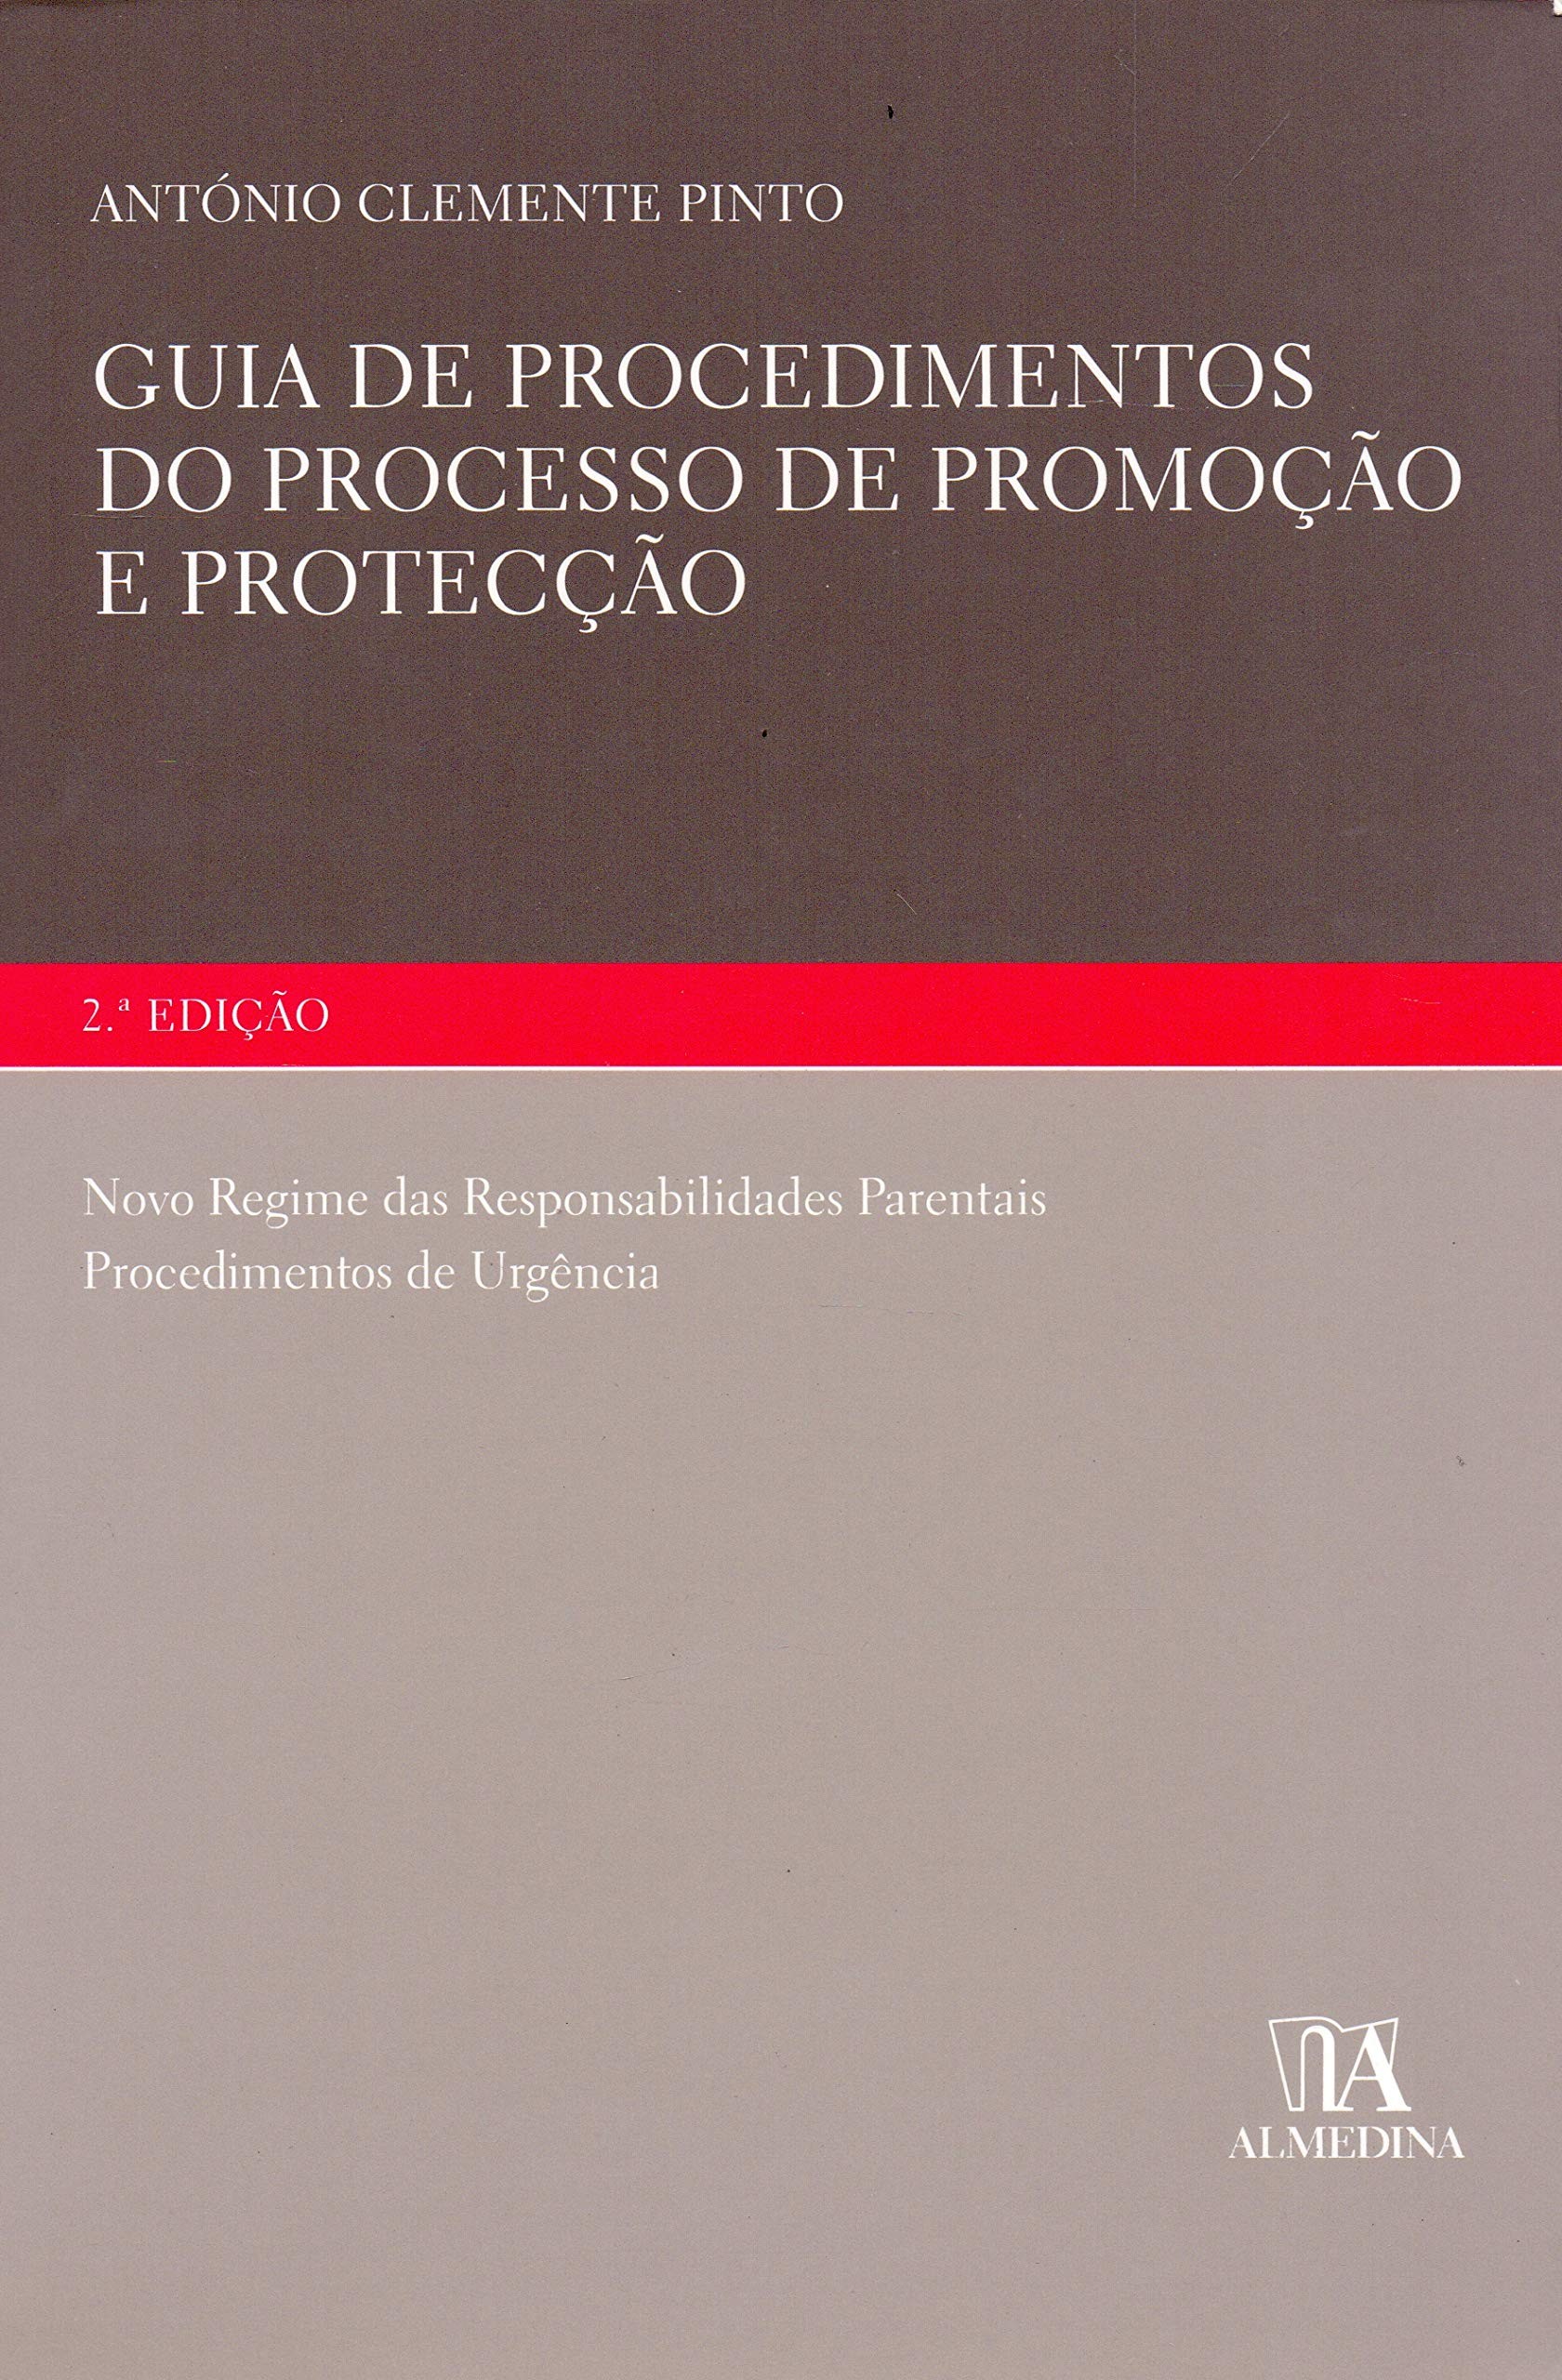 Guia de Procedimentos do Processo de Promoção e Protecção: Novo Regime das